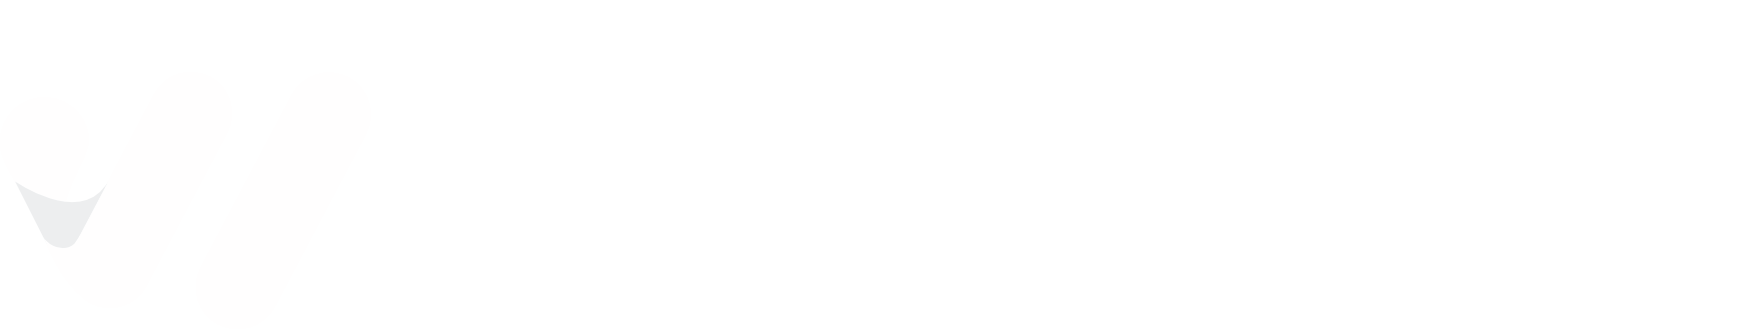 logo weezion blanc